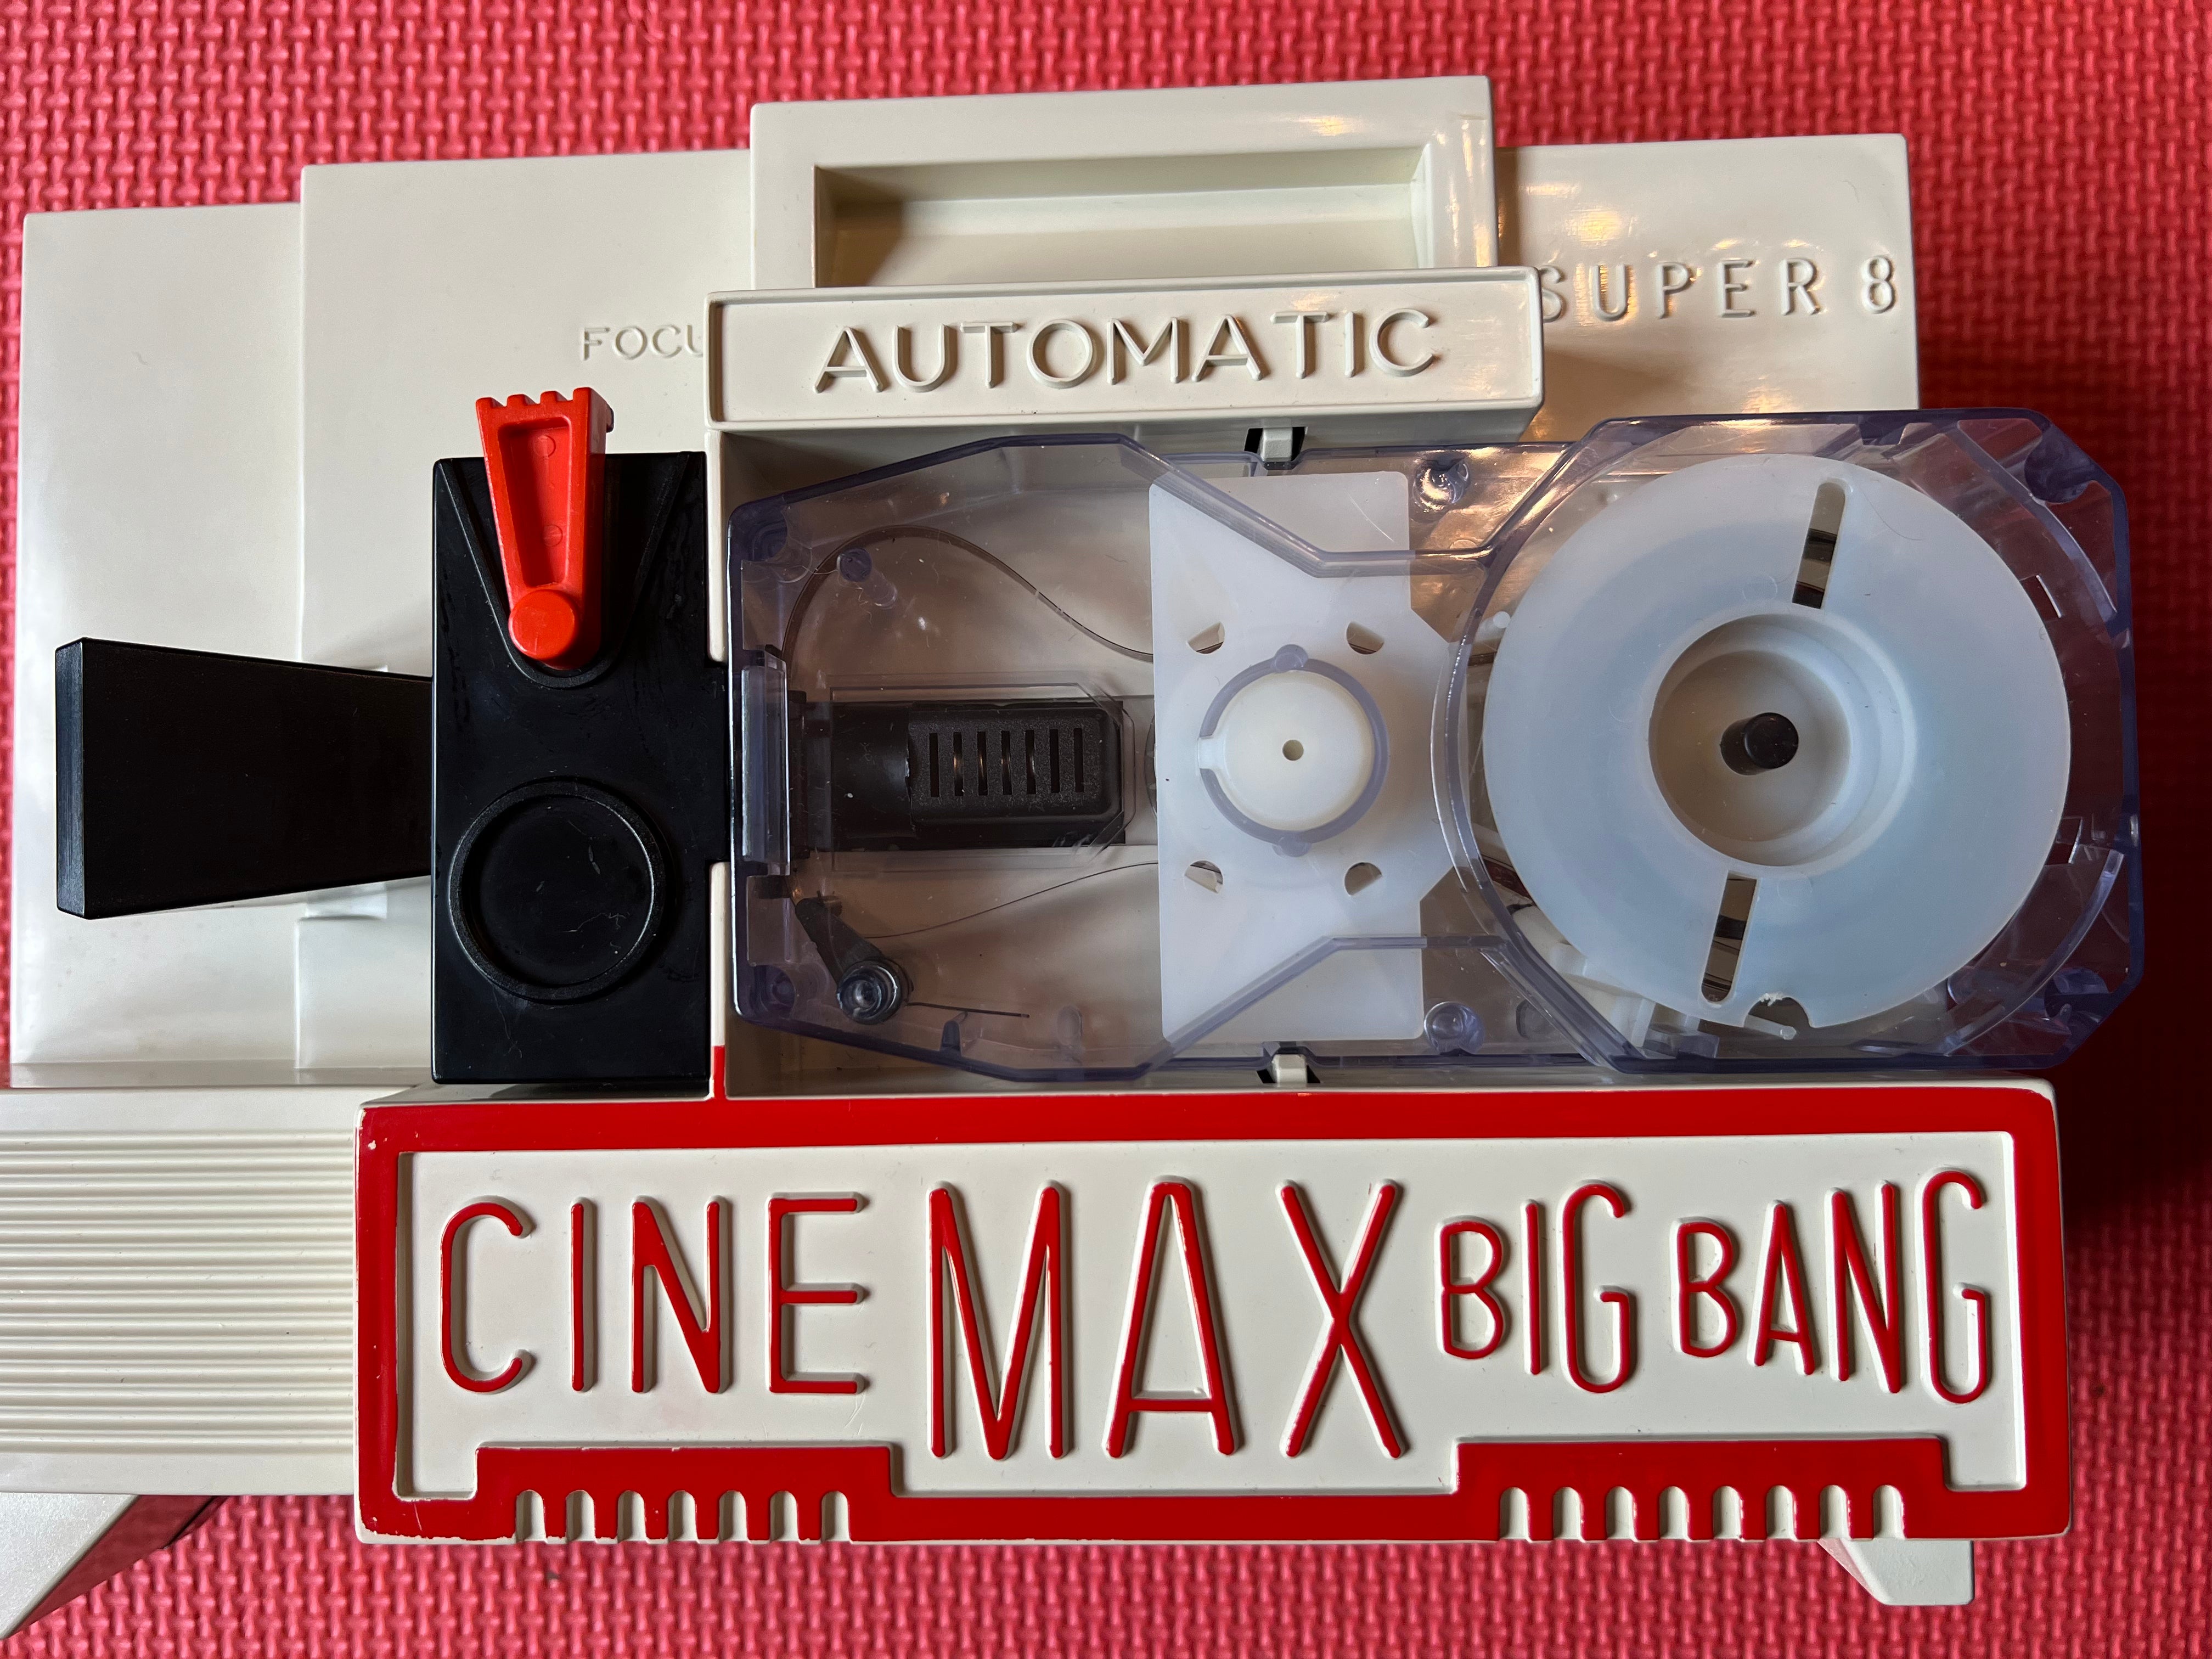 Cine Max Big Bang proiettore funzionante super 8 rarissimo